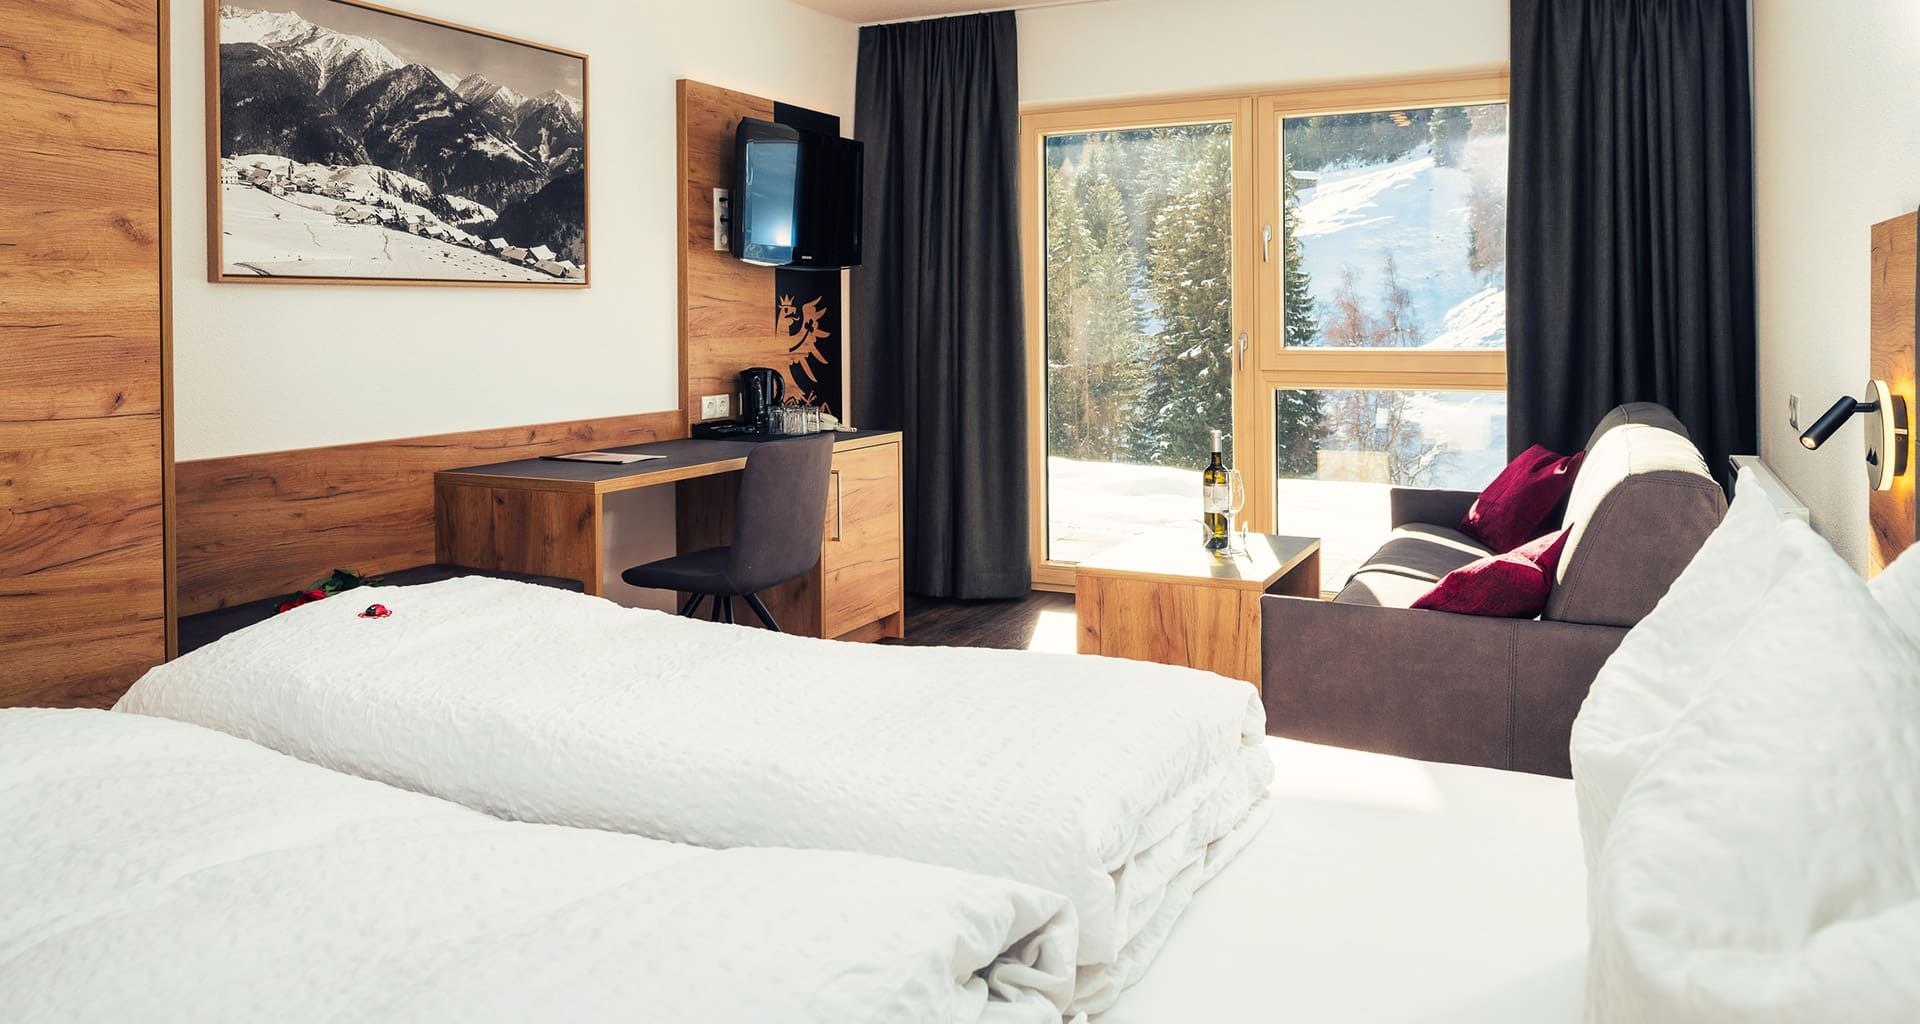 Hotel Bärolina room in Tyrol